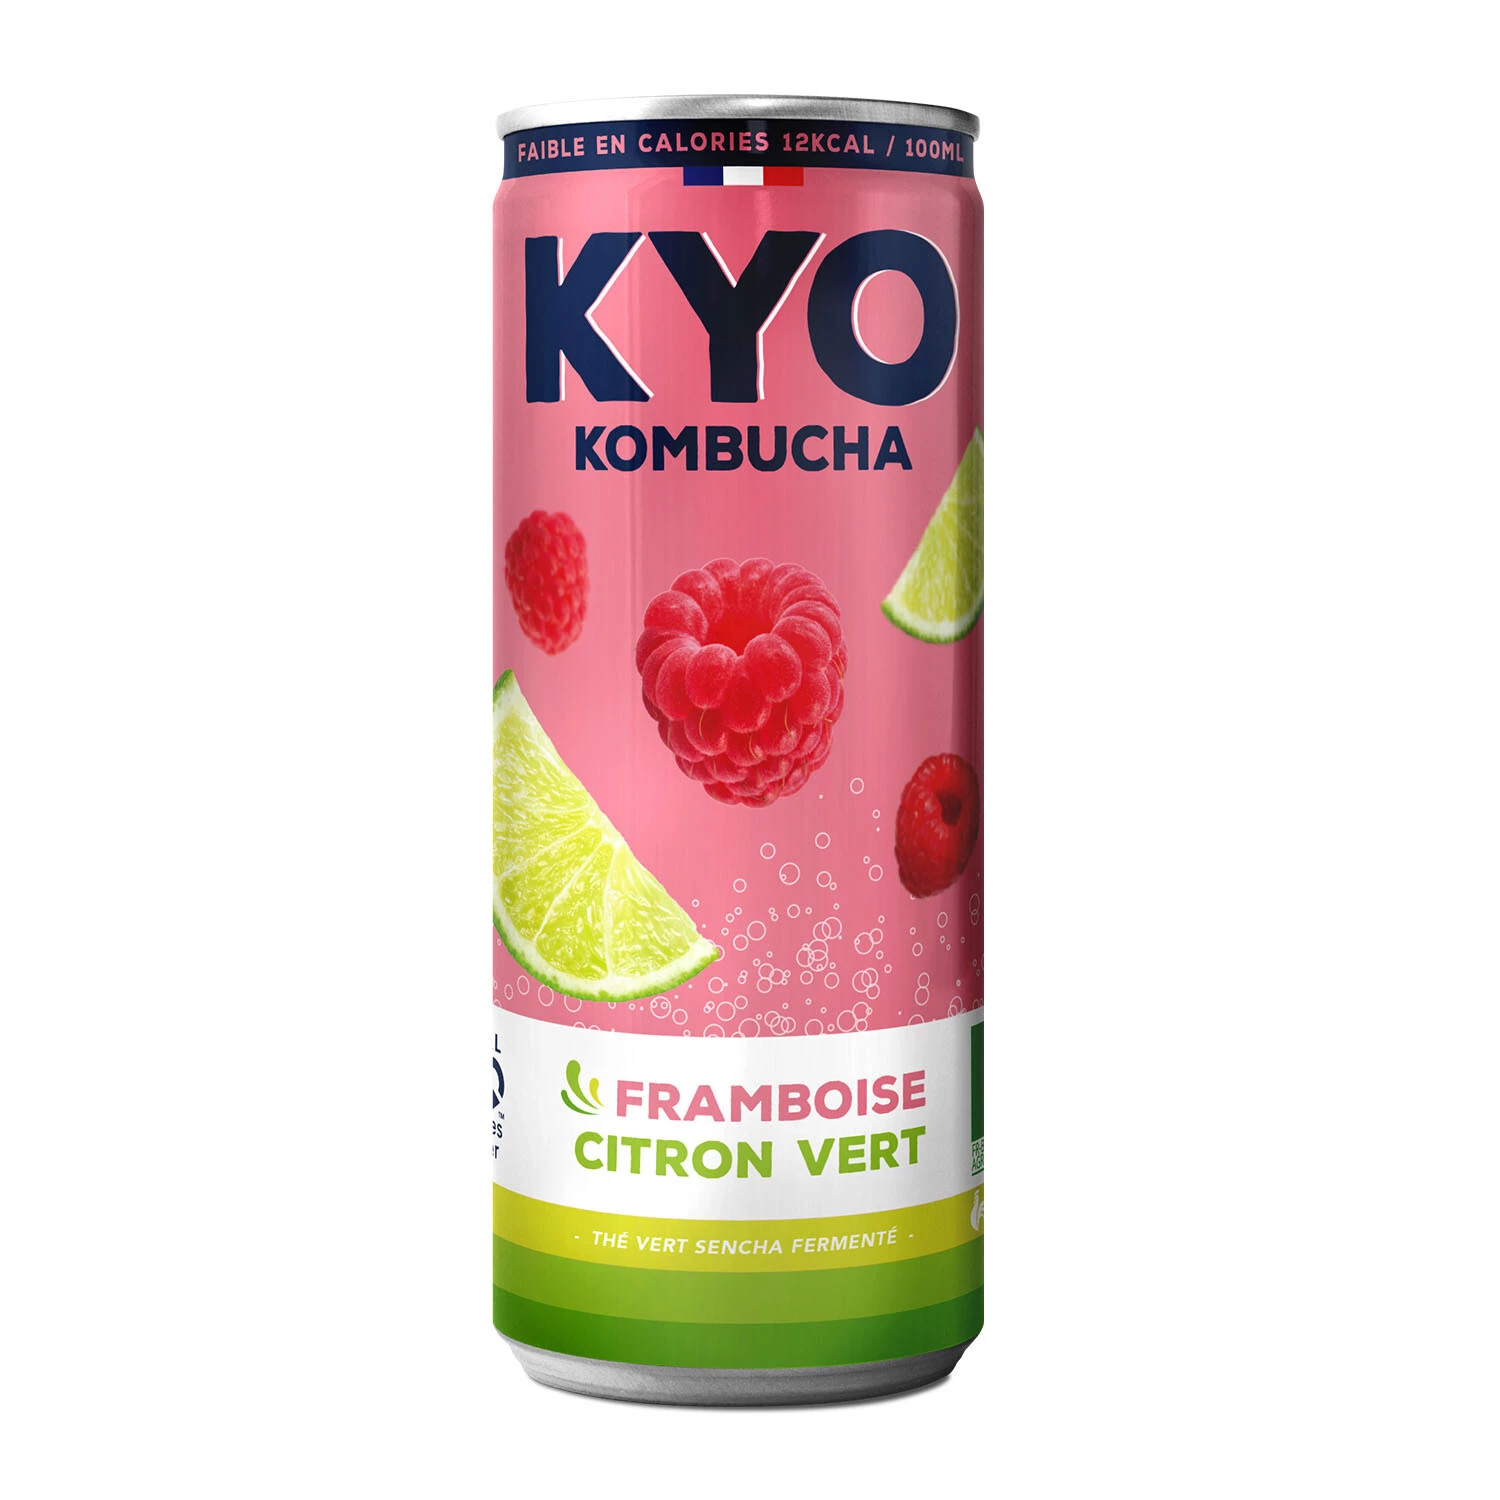 ラズベリーライム缶、33cl -  KYO KOMBUCHA